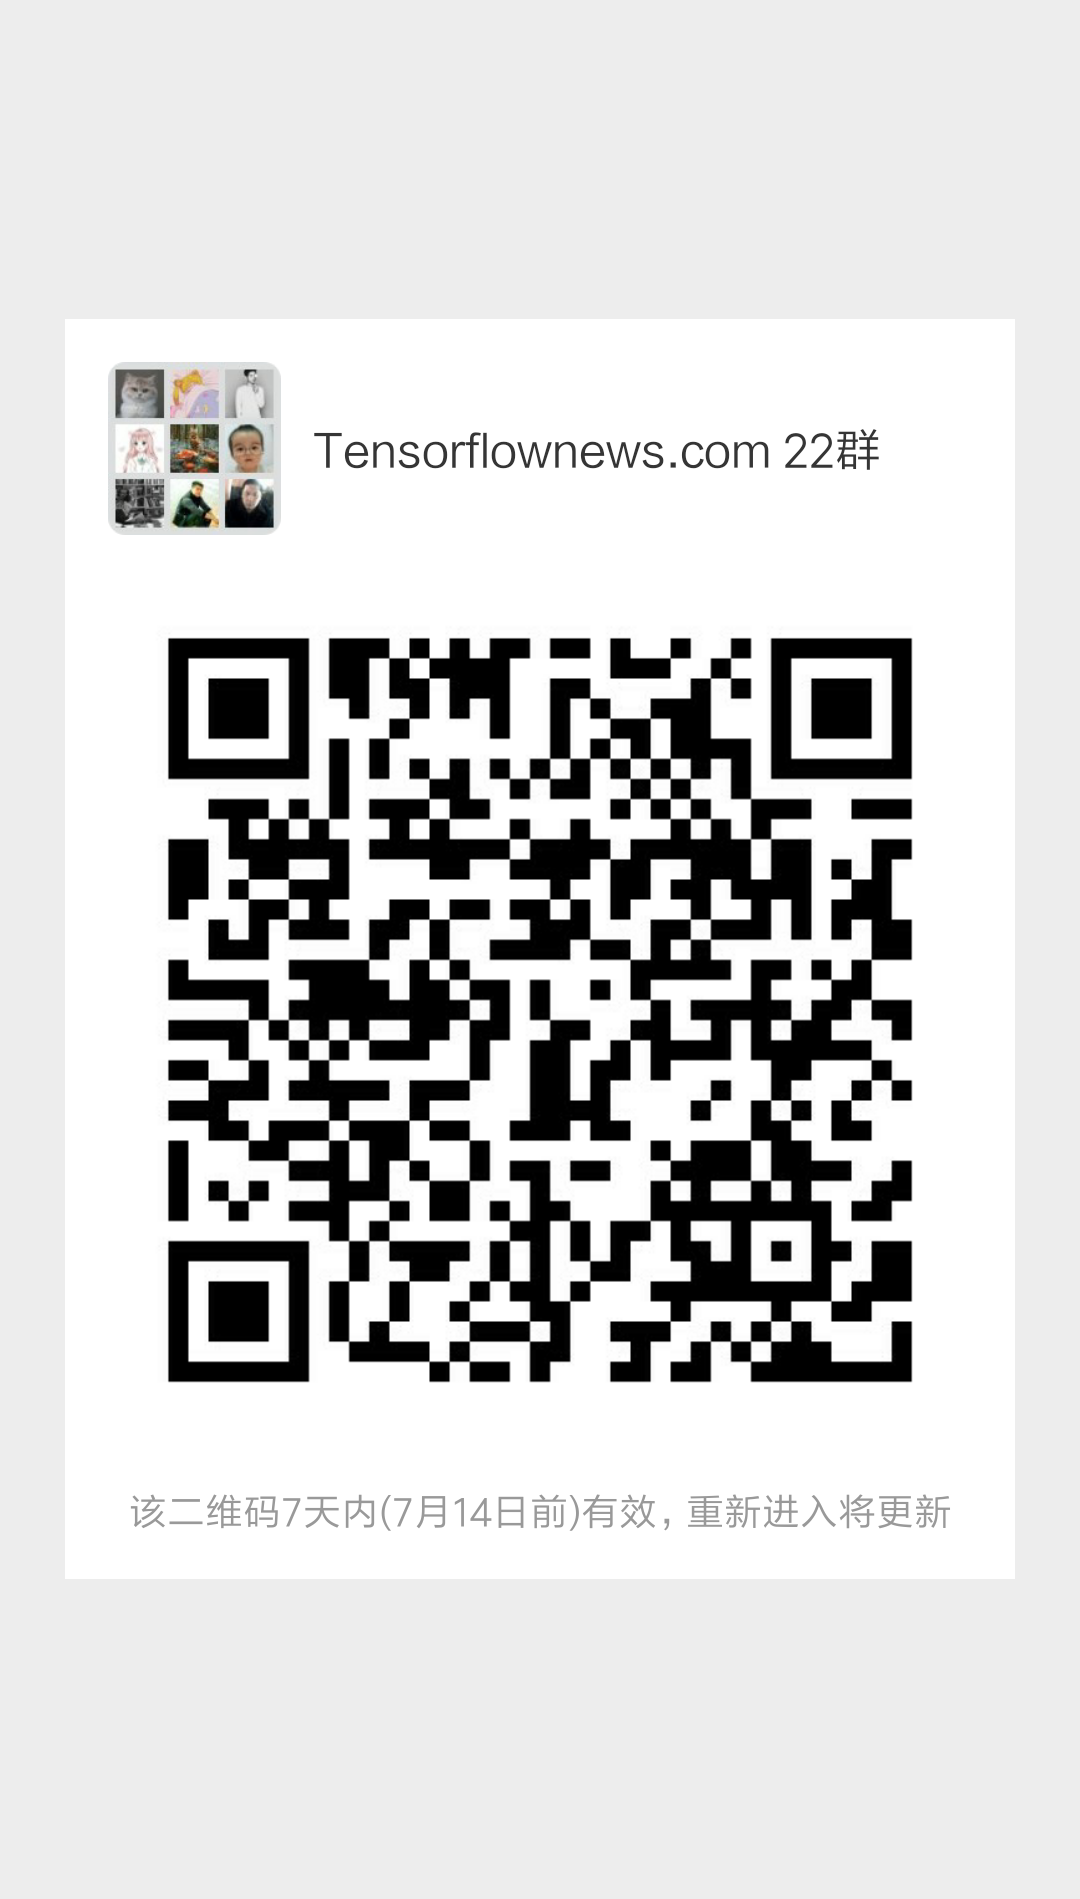 Tensorflow 微信交流群